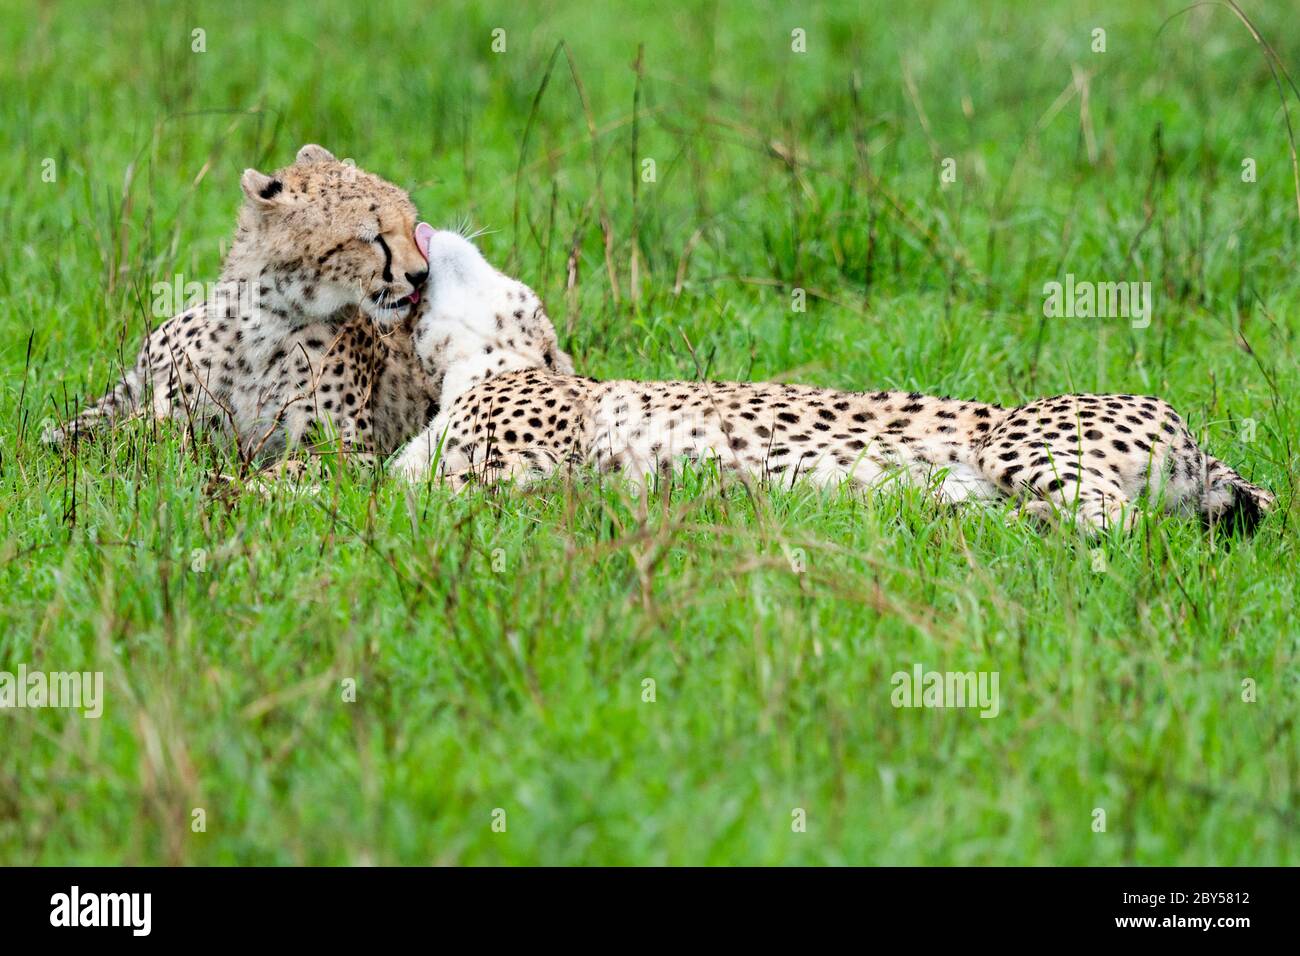 geparden (Acinonyx jubatus), zwei Geparden liegen zusammen auf Gras in der Savanne und kuscheln, Kenia, Masai Mara Nationalpark Stockfoto